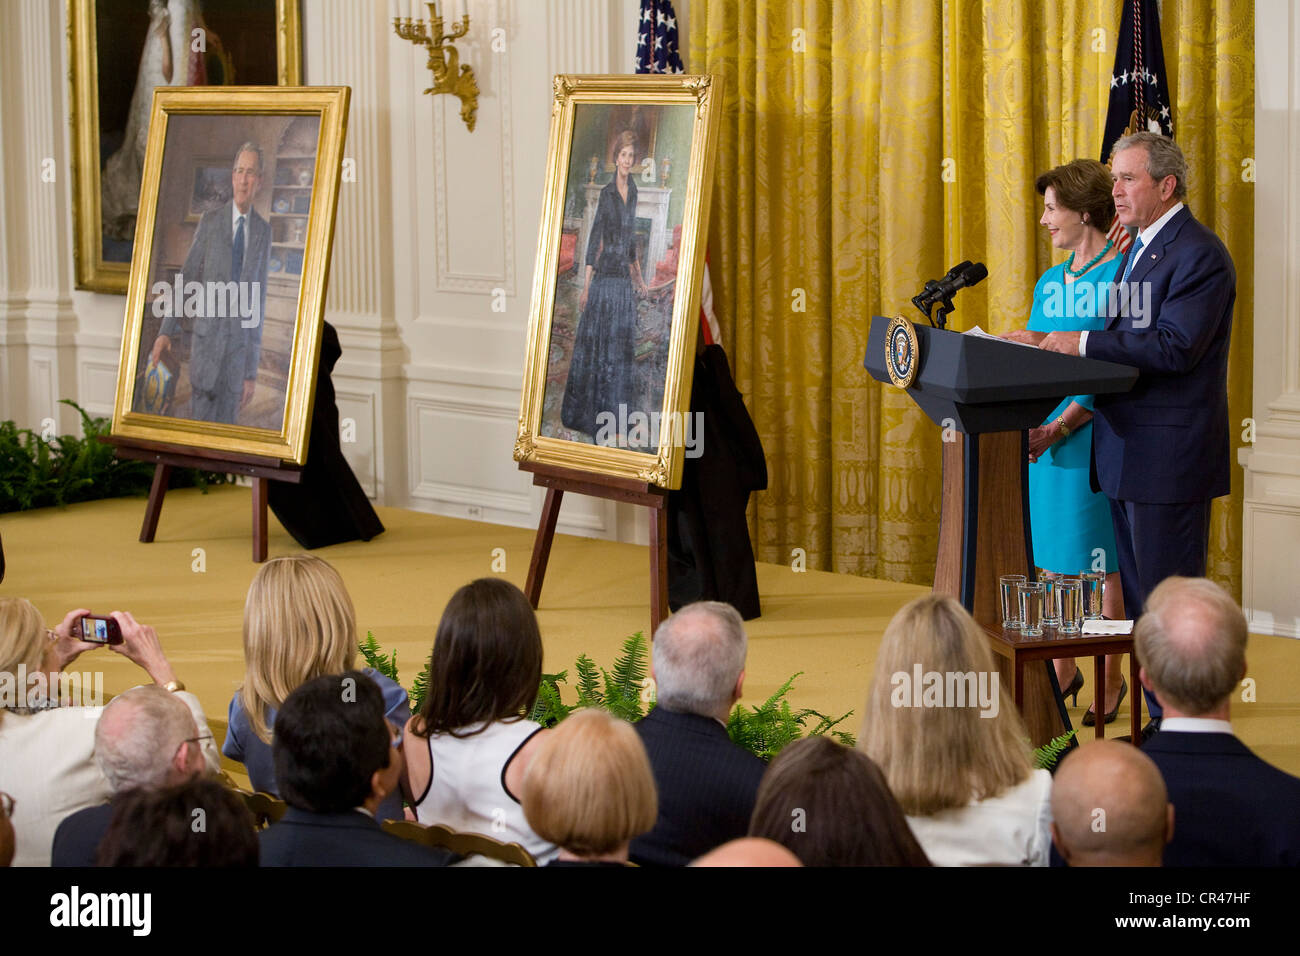 Ehemaligen Präsidenten George W. Bush eine First Lady Laura Bush im Weißen Haus Zeremonie, seine offizielle Porträt zu enthüllen. Stockfoto